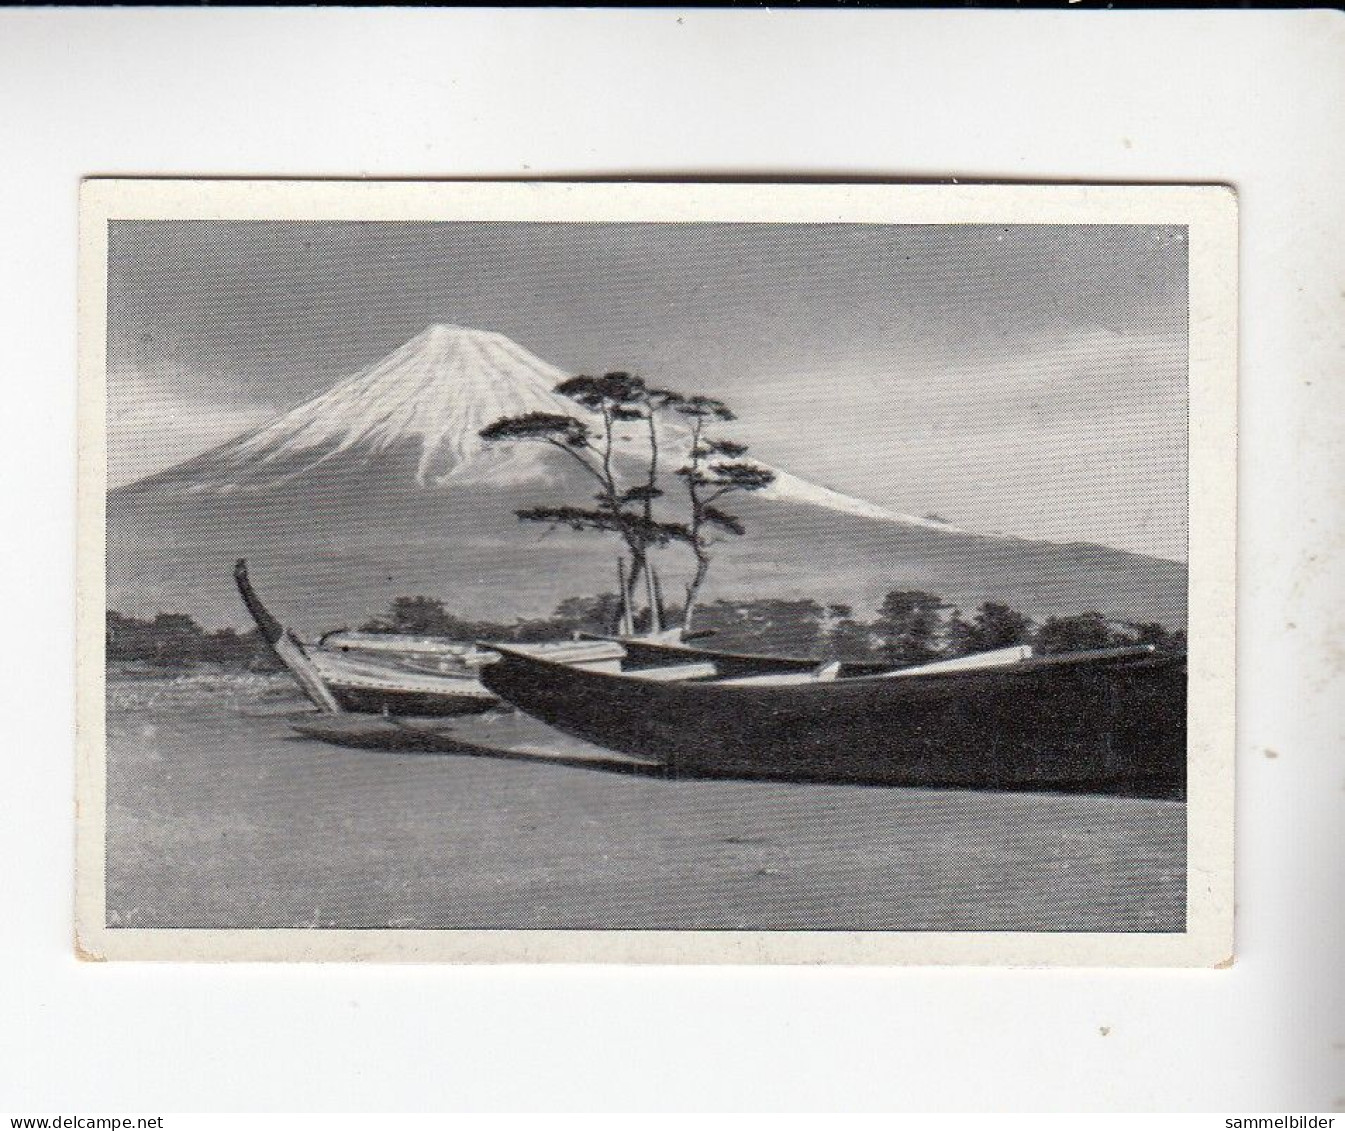 Mit Trumpf Durch Alle Welt Berühmte Berge Fudschijama     A Serie 17 #6 Von 1933 - Zigarettenmarken